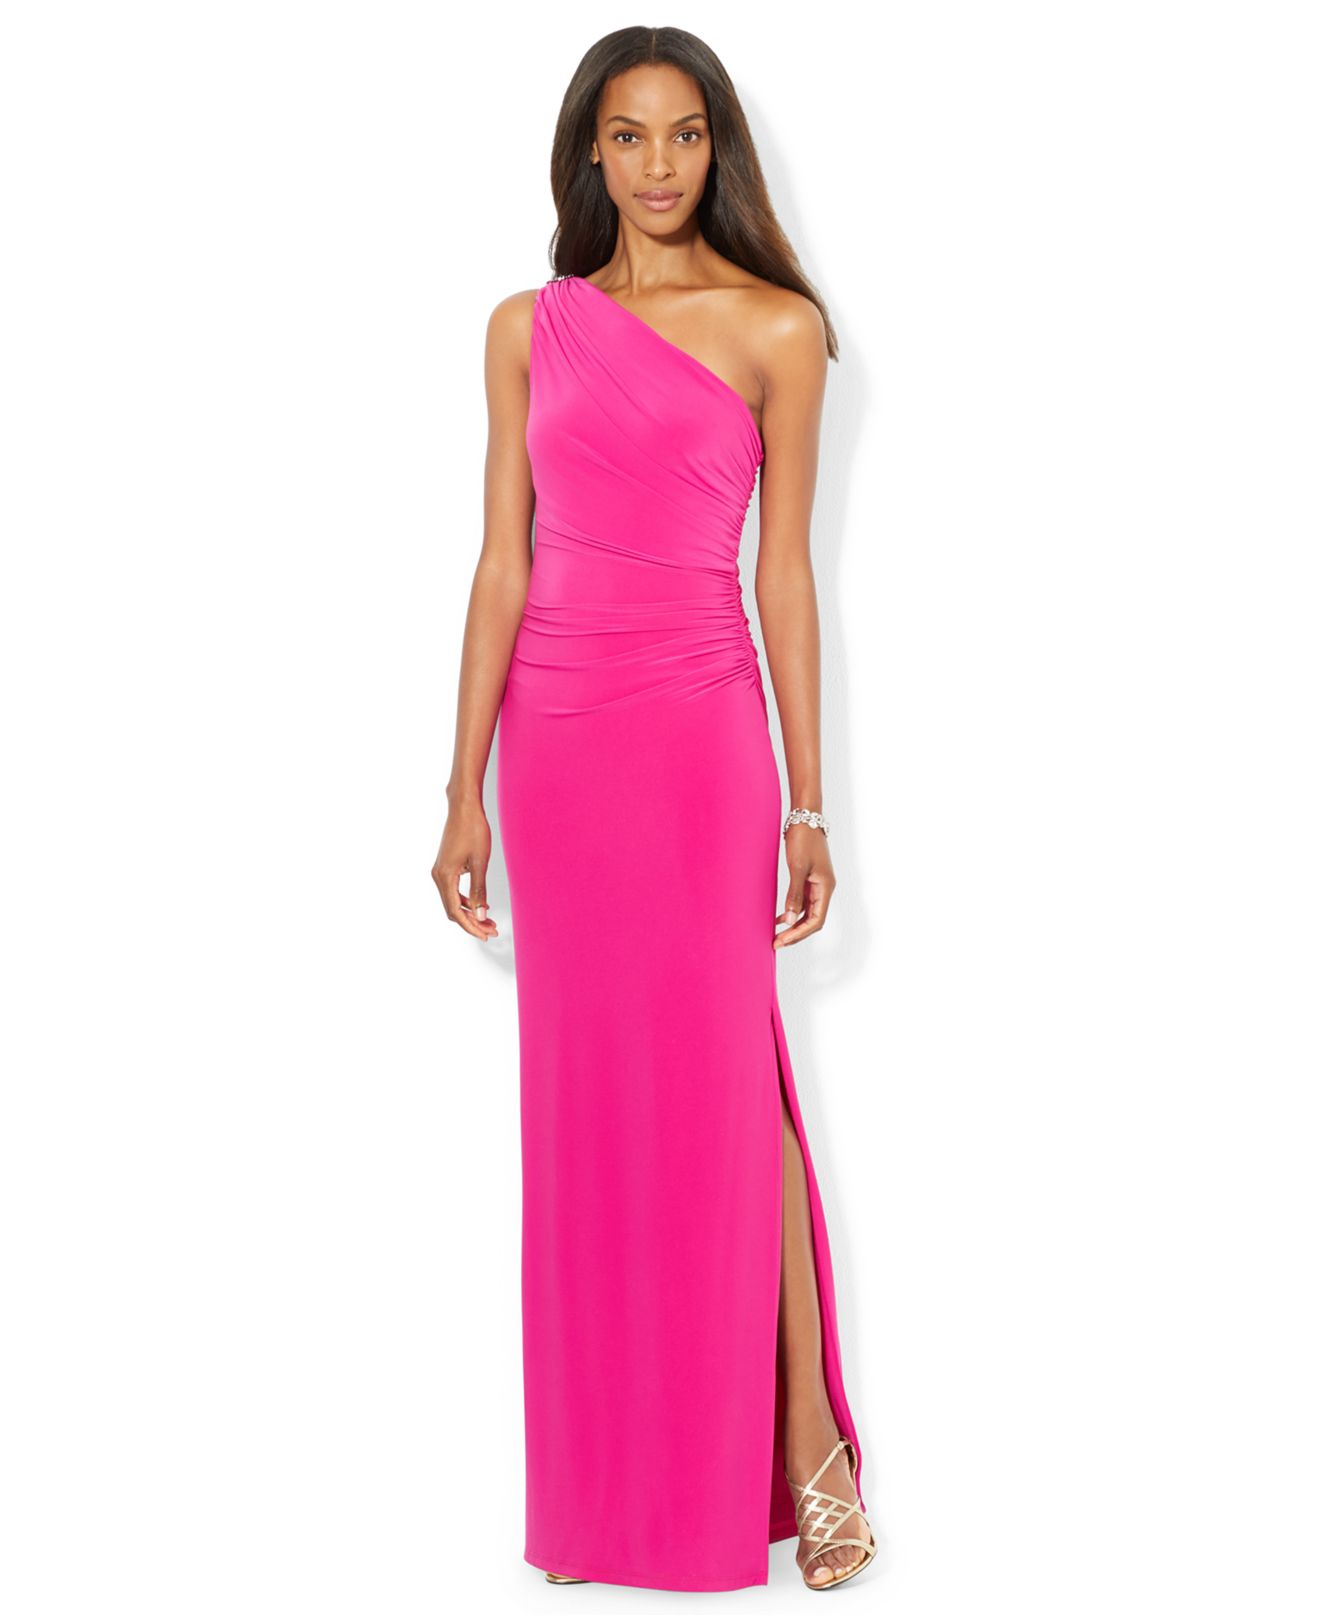 Lauren by Ralph Lauren One-Shoulder Evening Gown in Pink | Lyst